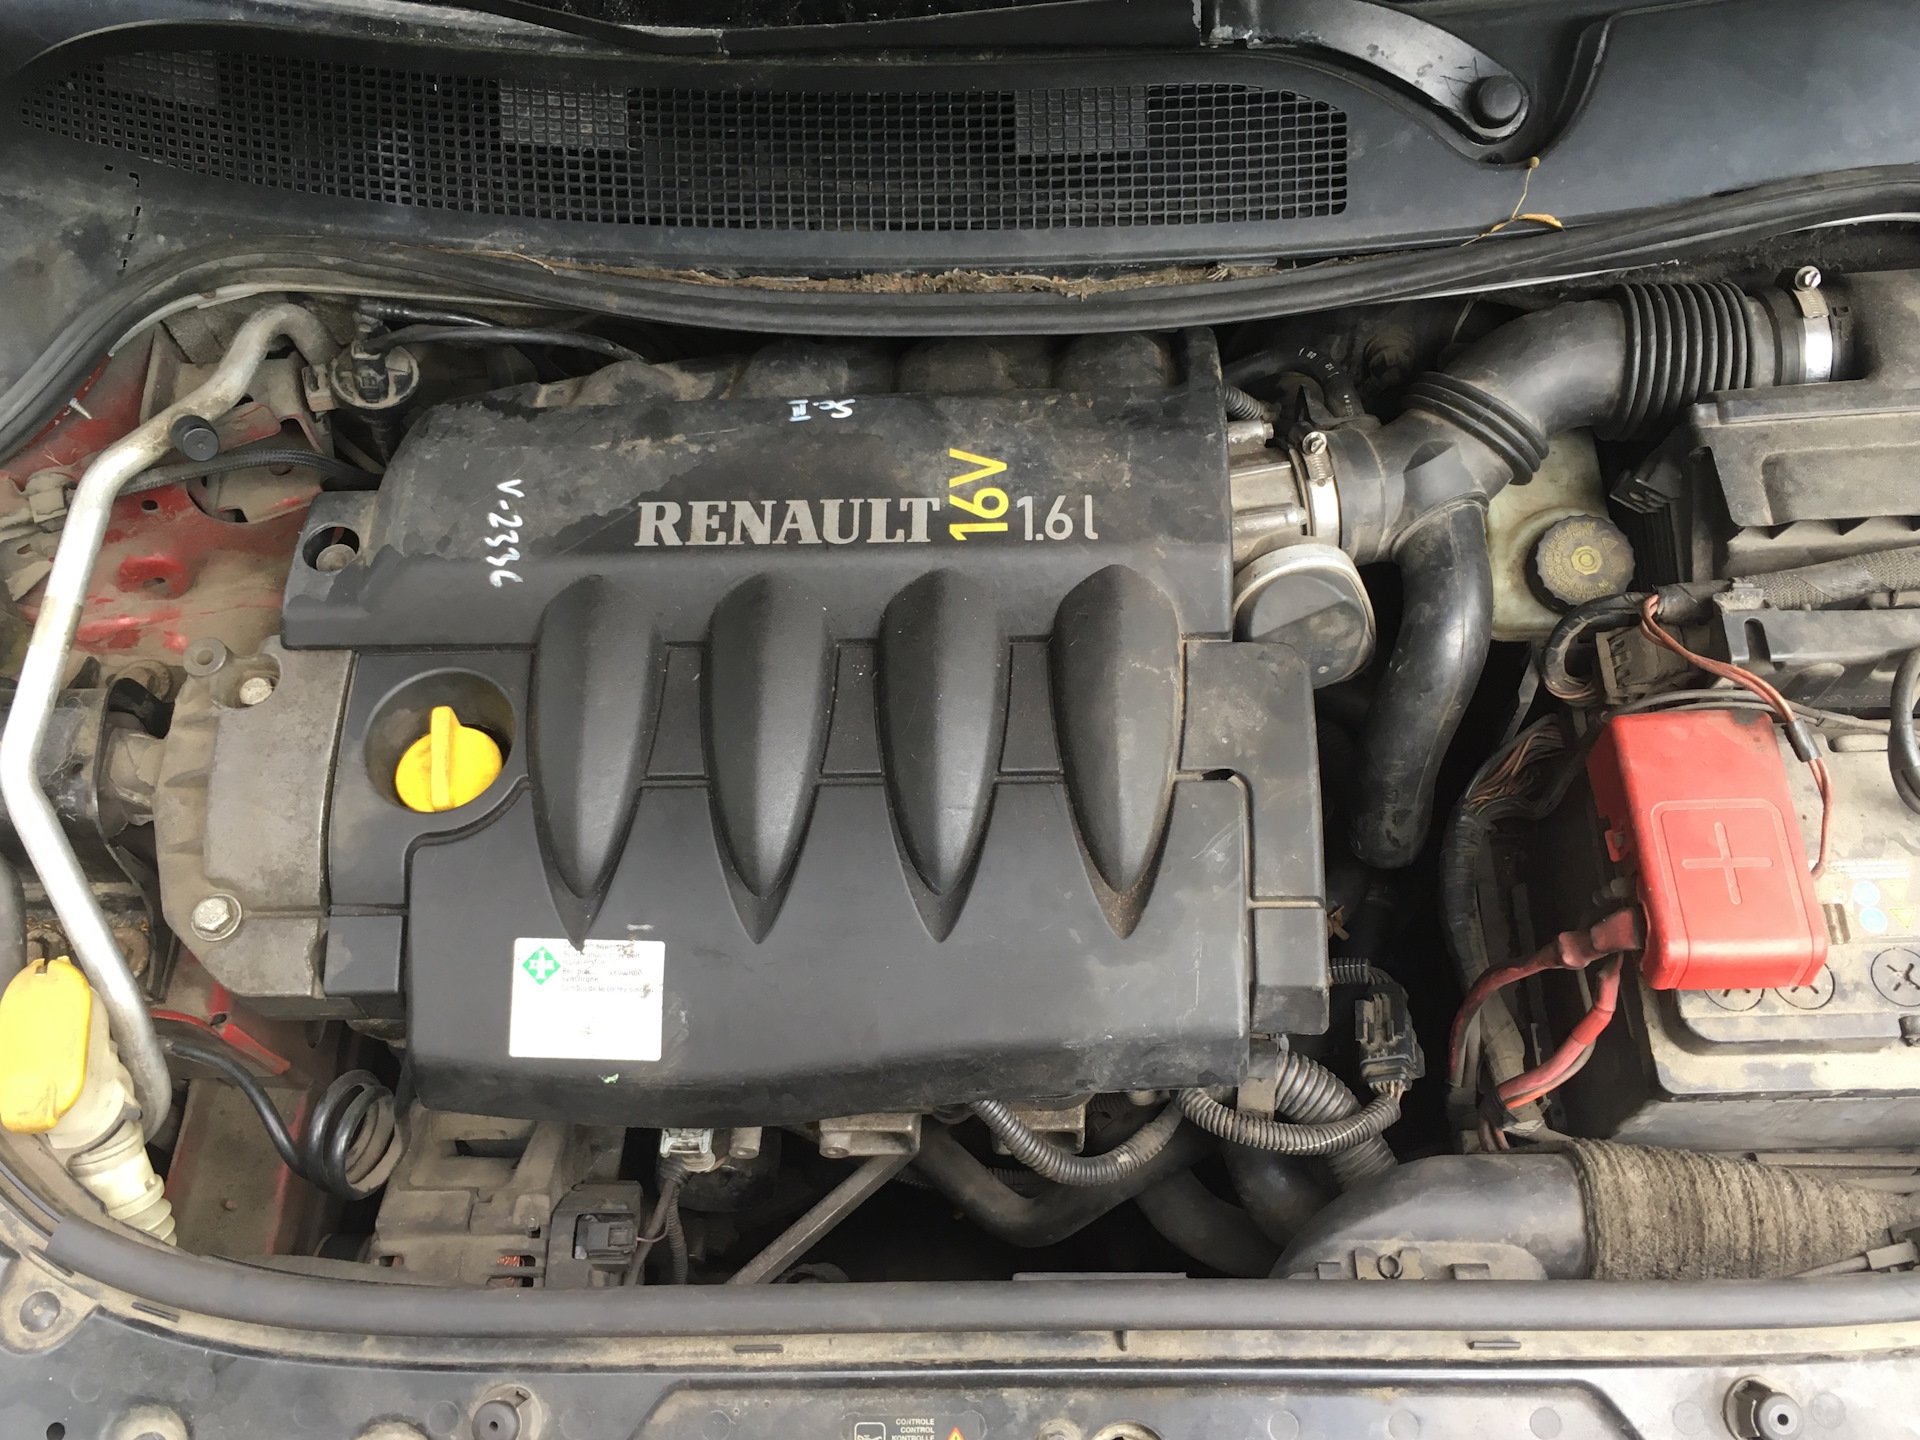 Renault megane 2 двигатели. Рено Меган 2 ДВС. Двигатель Рено Меган 2 1.6. Мотор Рено Меган 2.0. Двигатель Рено Меган 1.6.